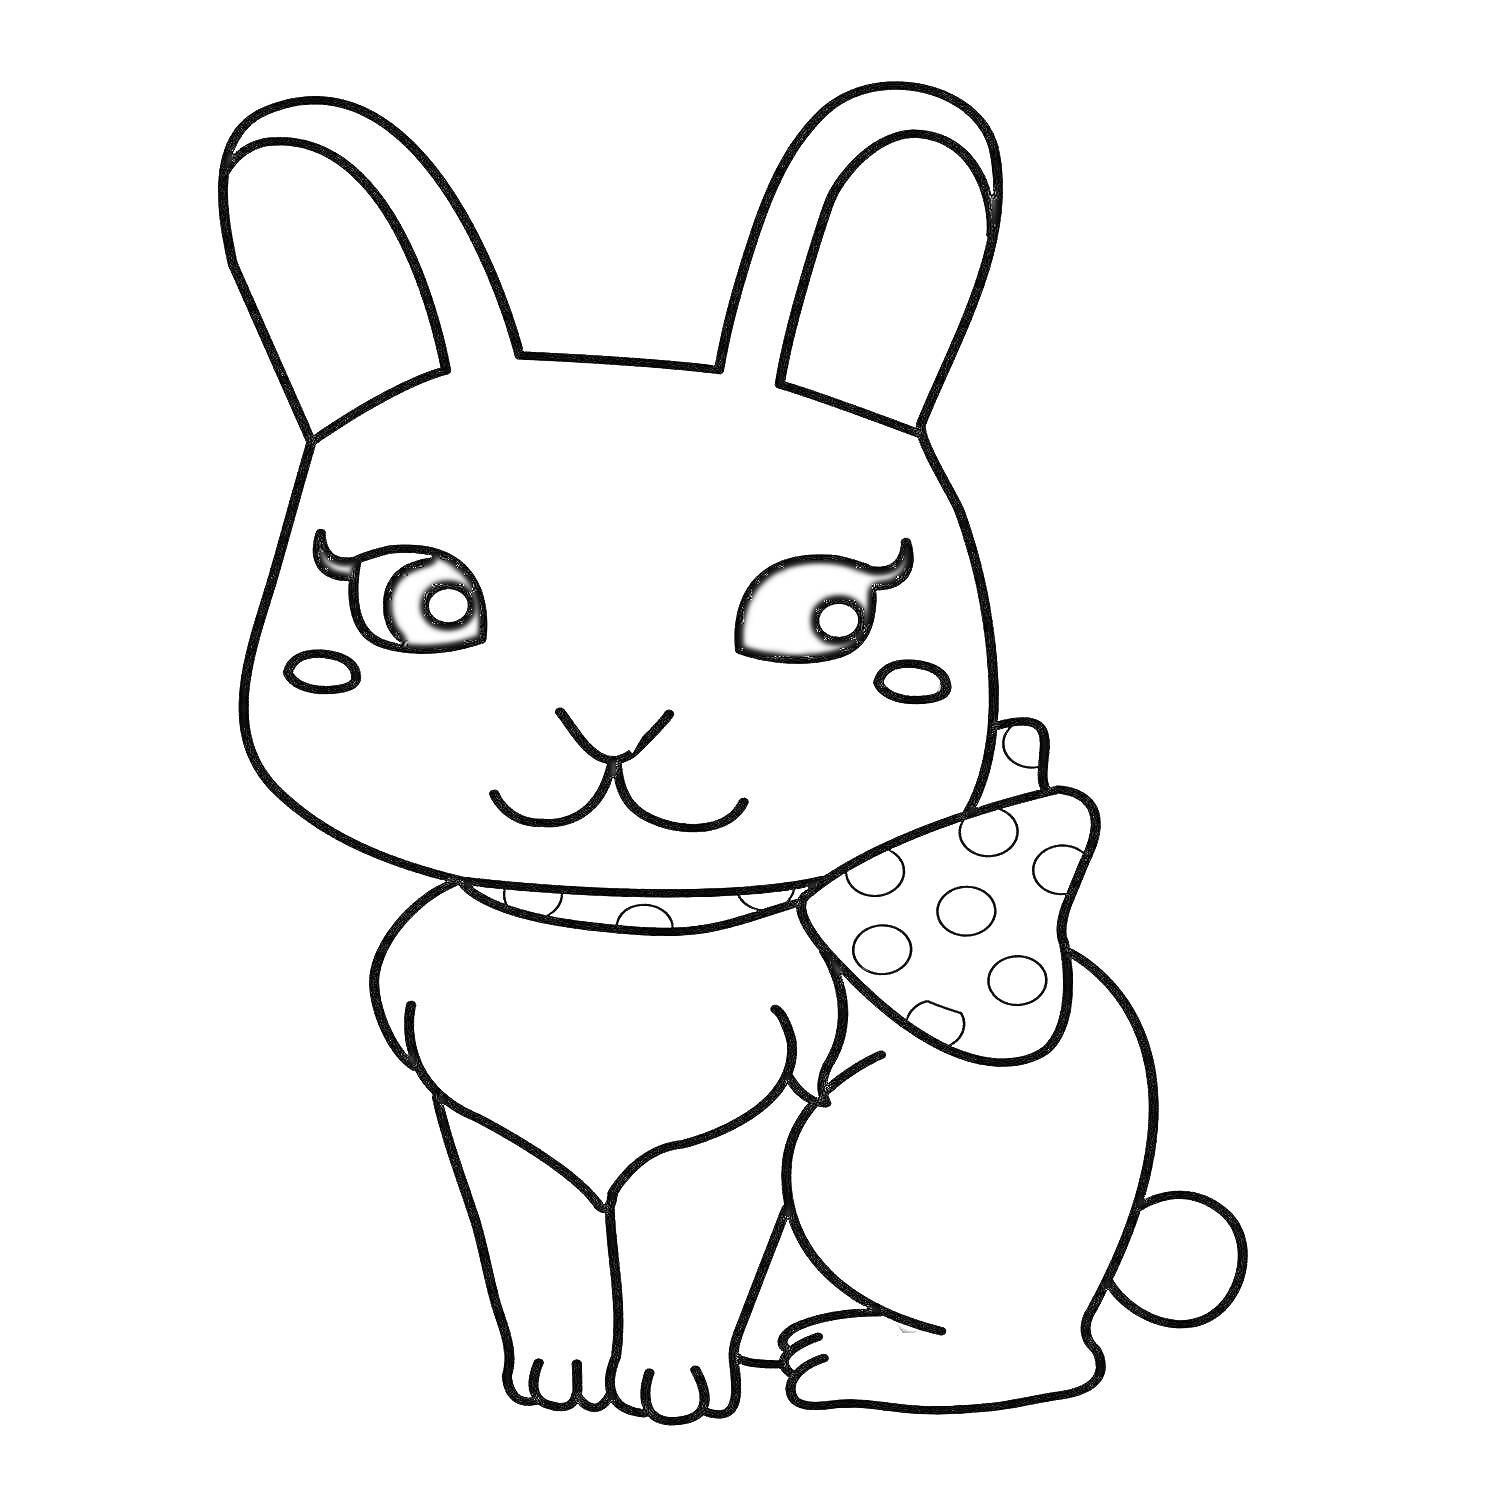 Раскраска Кролик с банданой в горошек